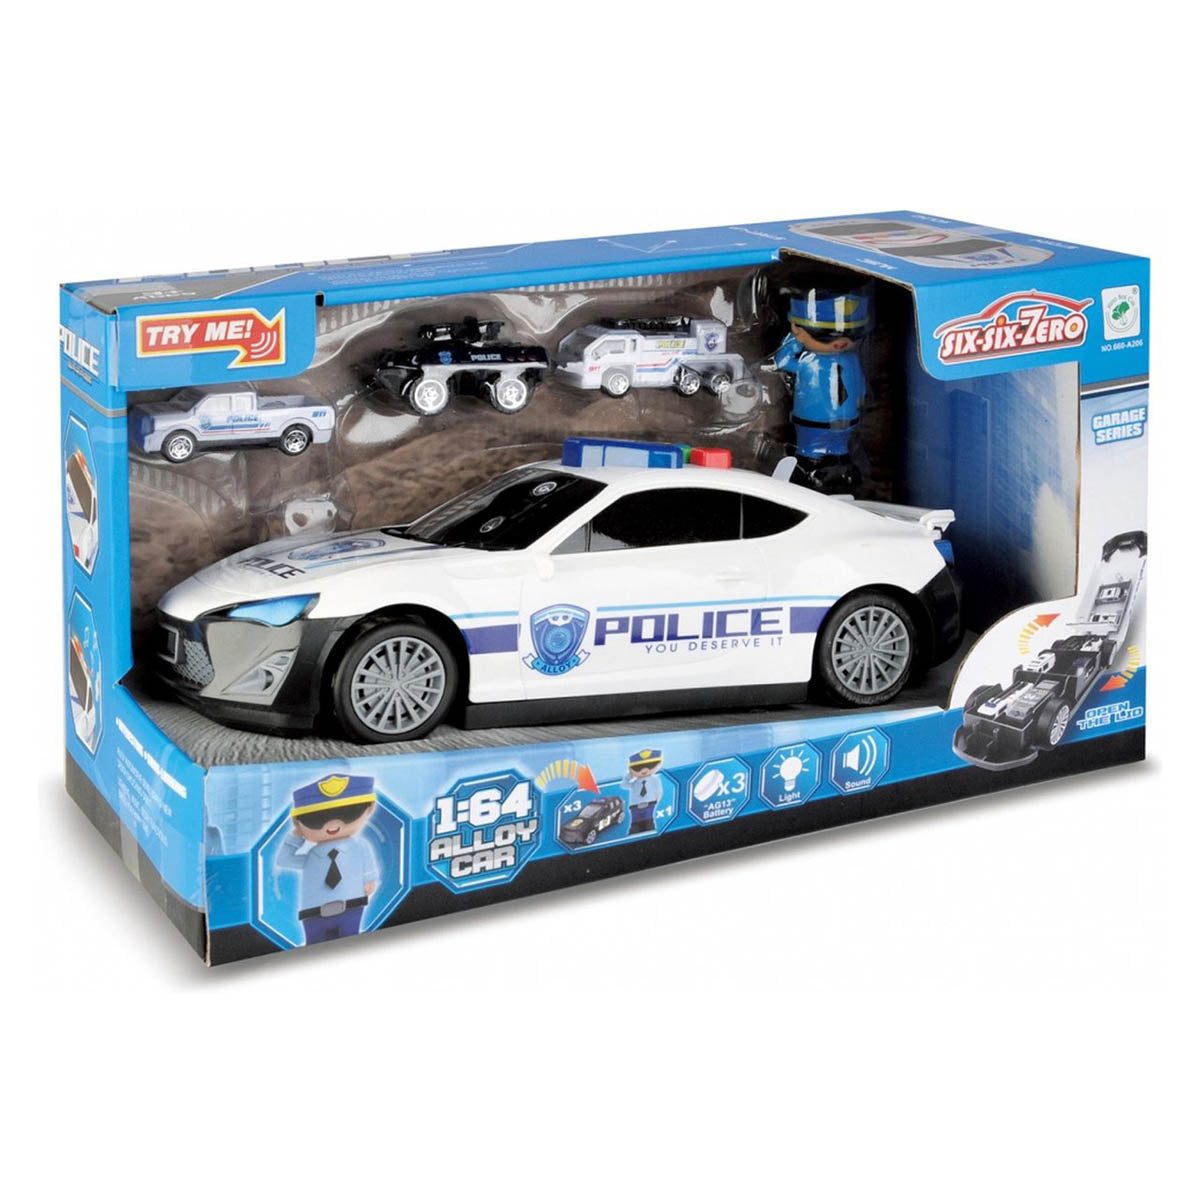 Ariko Ensemble de voiture de police XL - pas moins de 1:64 - 3 voitures supplémentaires - compartiments de rangement dans la voiture - policier - avec lumière et son - piles incluses